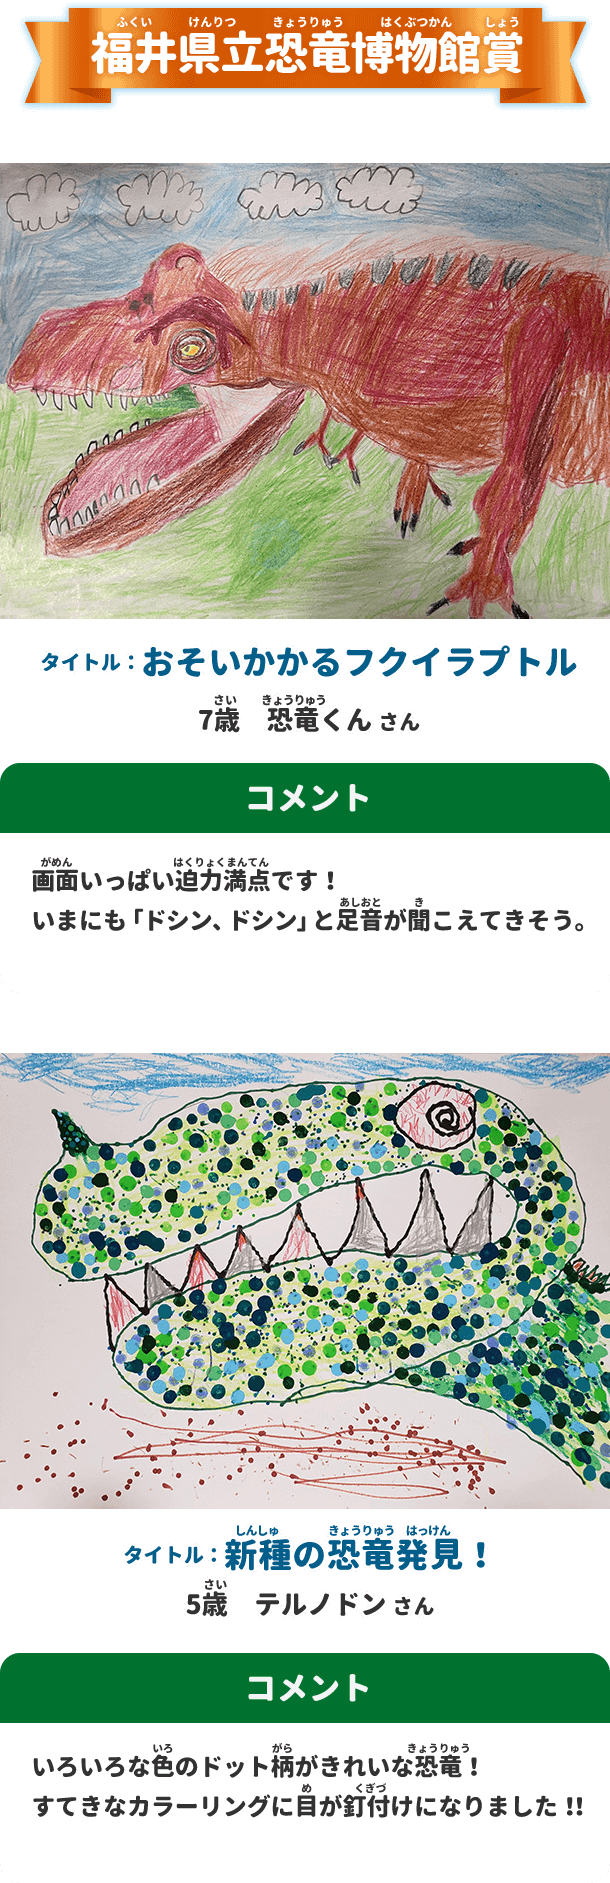 福井県立恐竜博物館賞